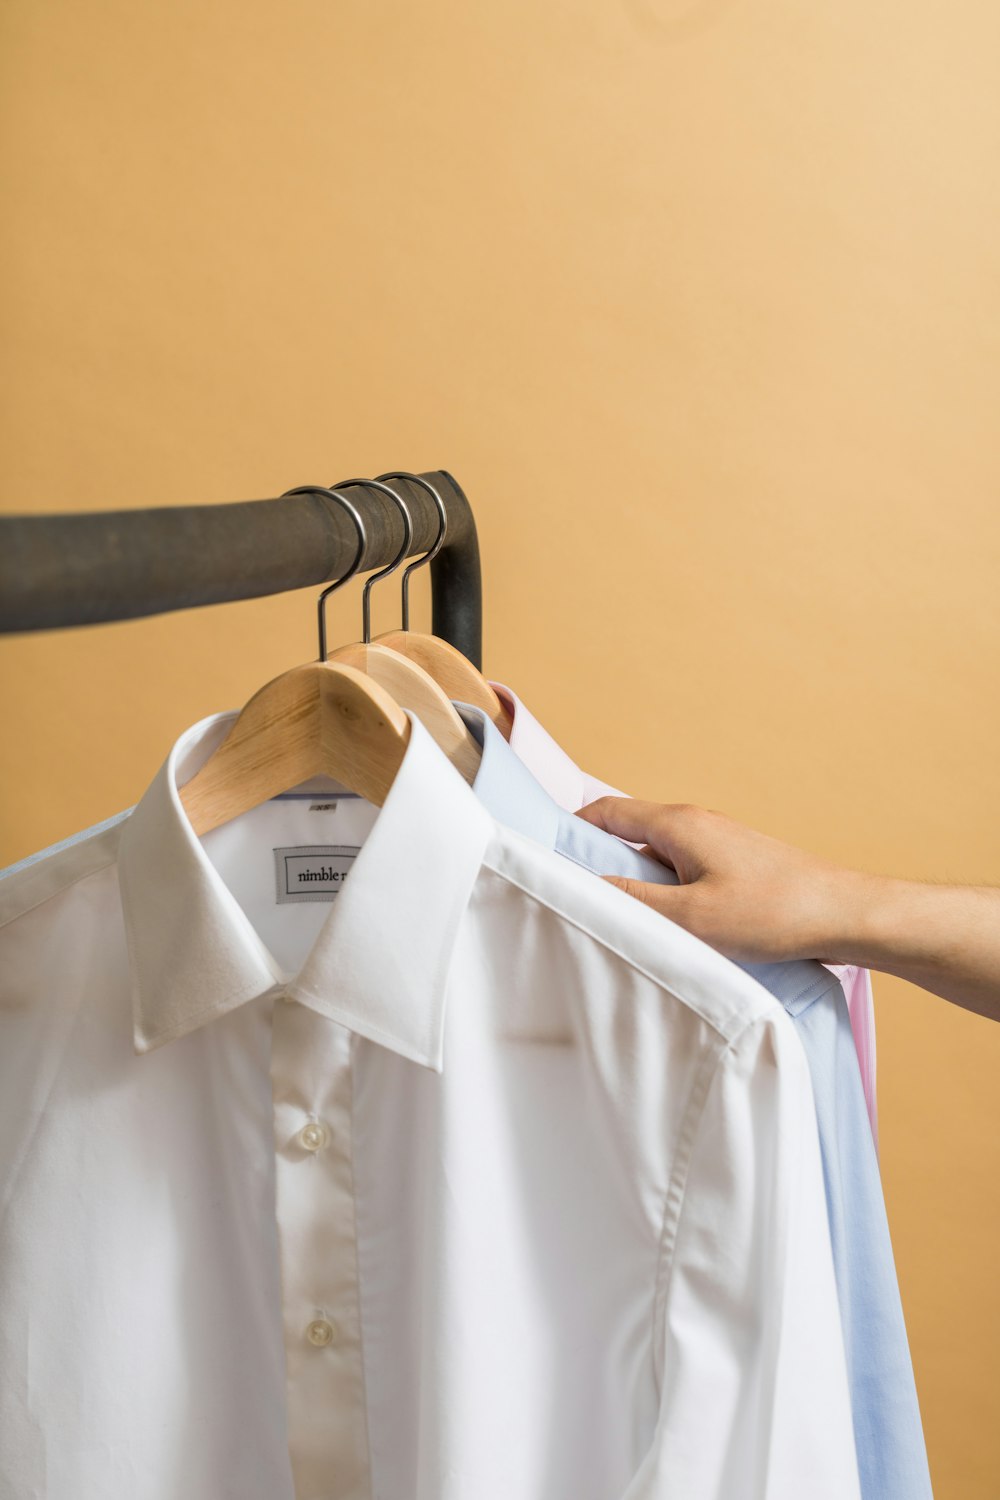 camisa branca do botão para cima no cabide da roupa